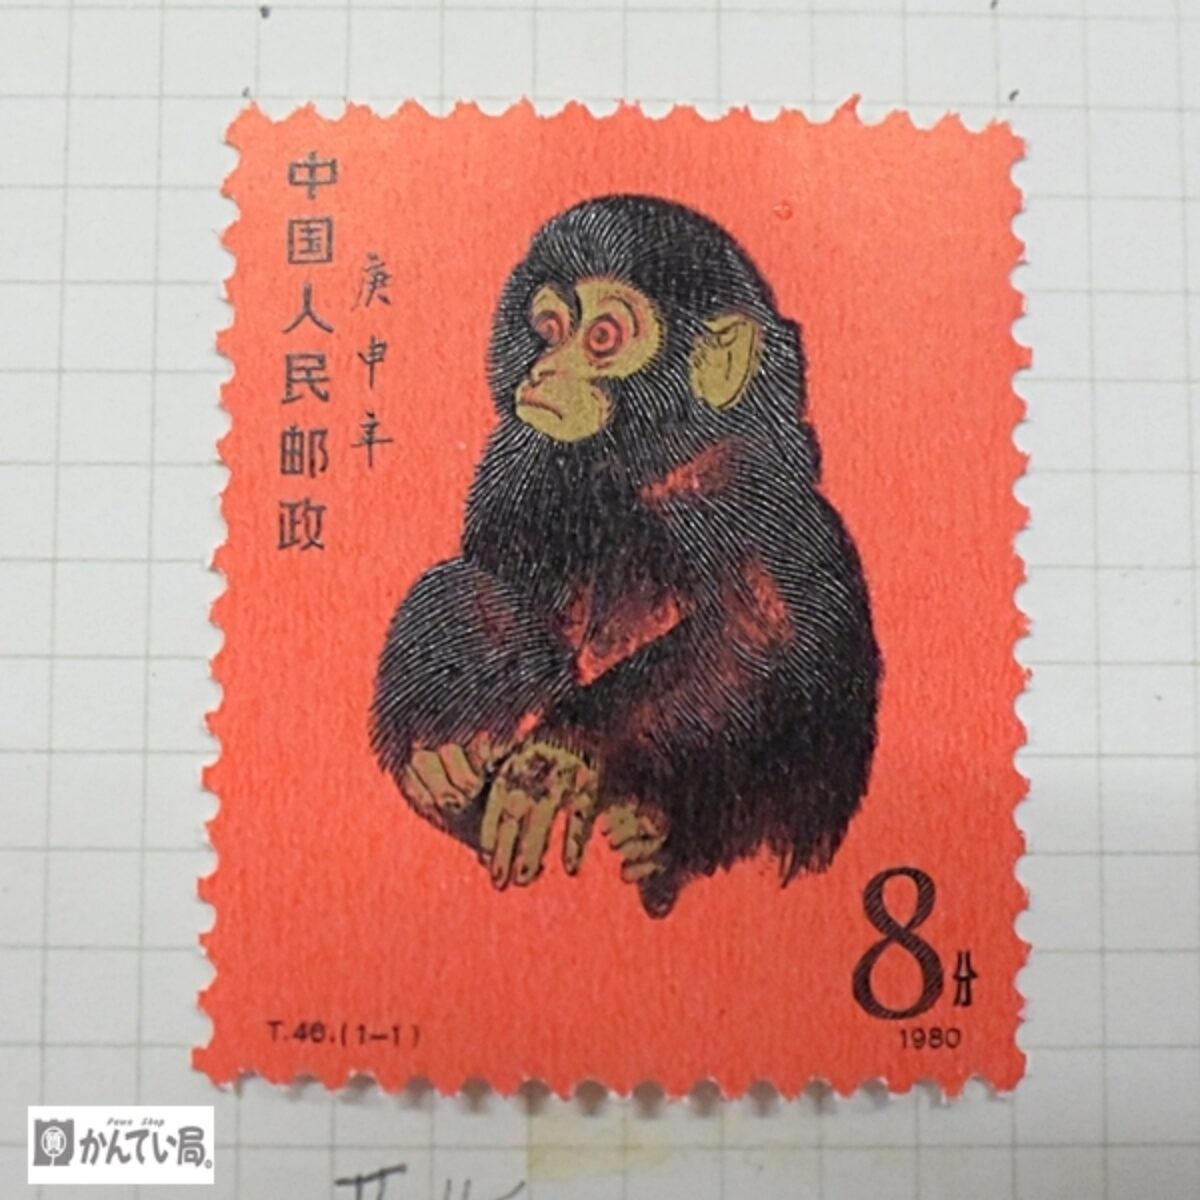 中国切手 T46 赤猿 年賀切手 1980年骨董品 - 使用済切手/官製はがき